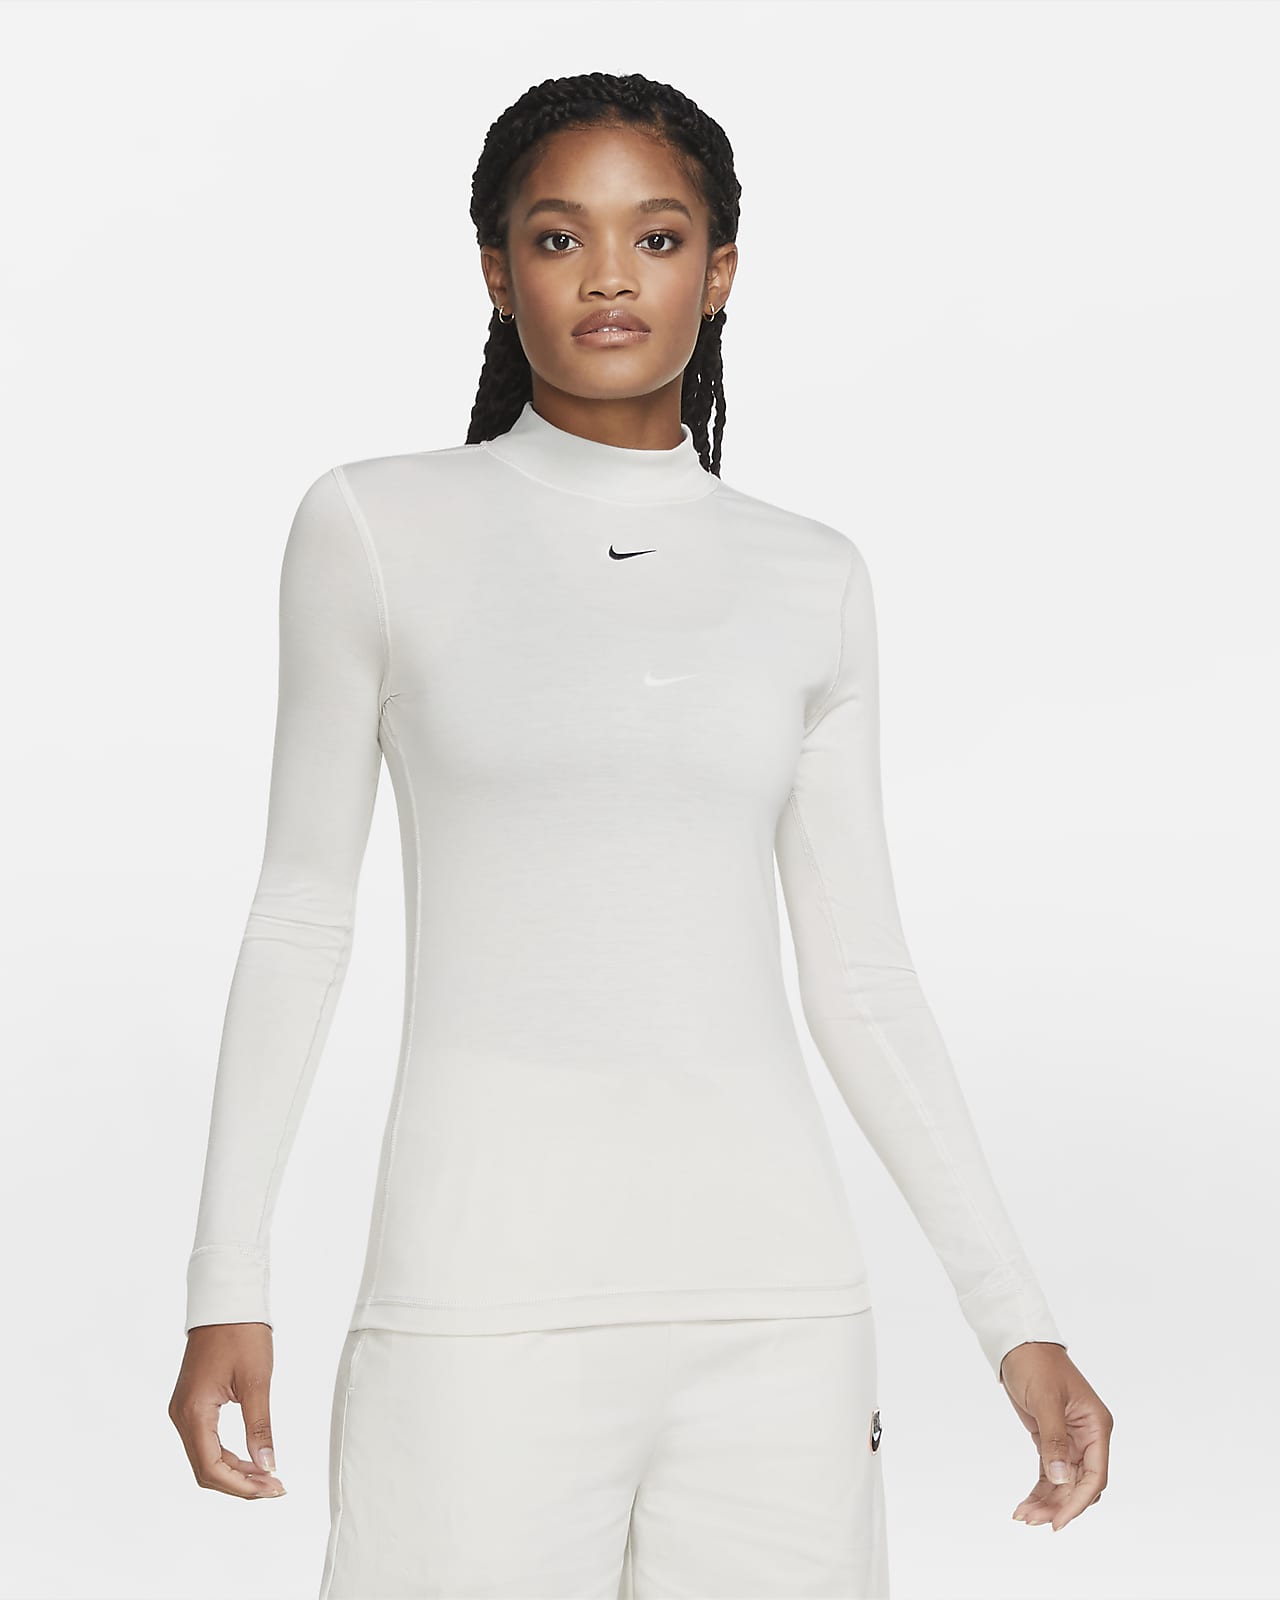 Download Nike Sportswear Women's Long-Sleeve Mock-Neck Top. Nike IL